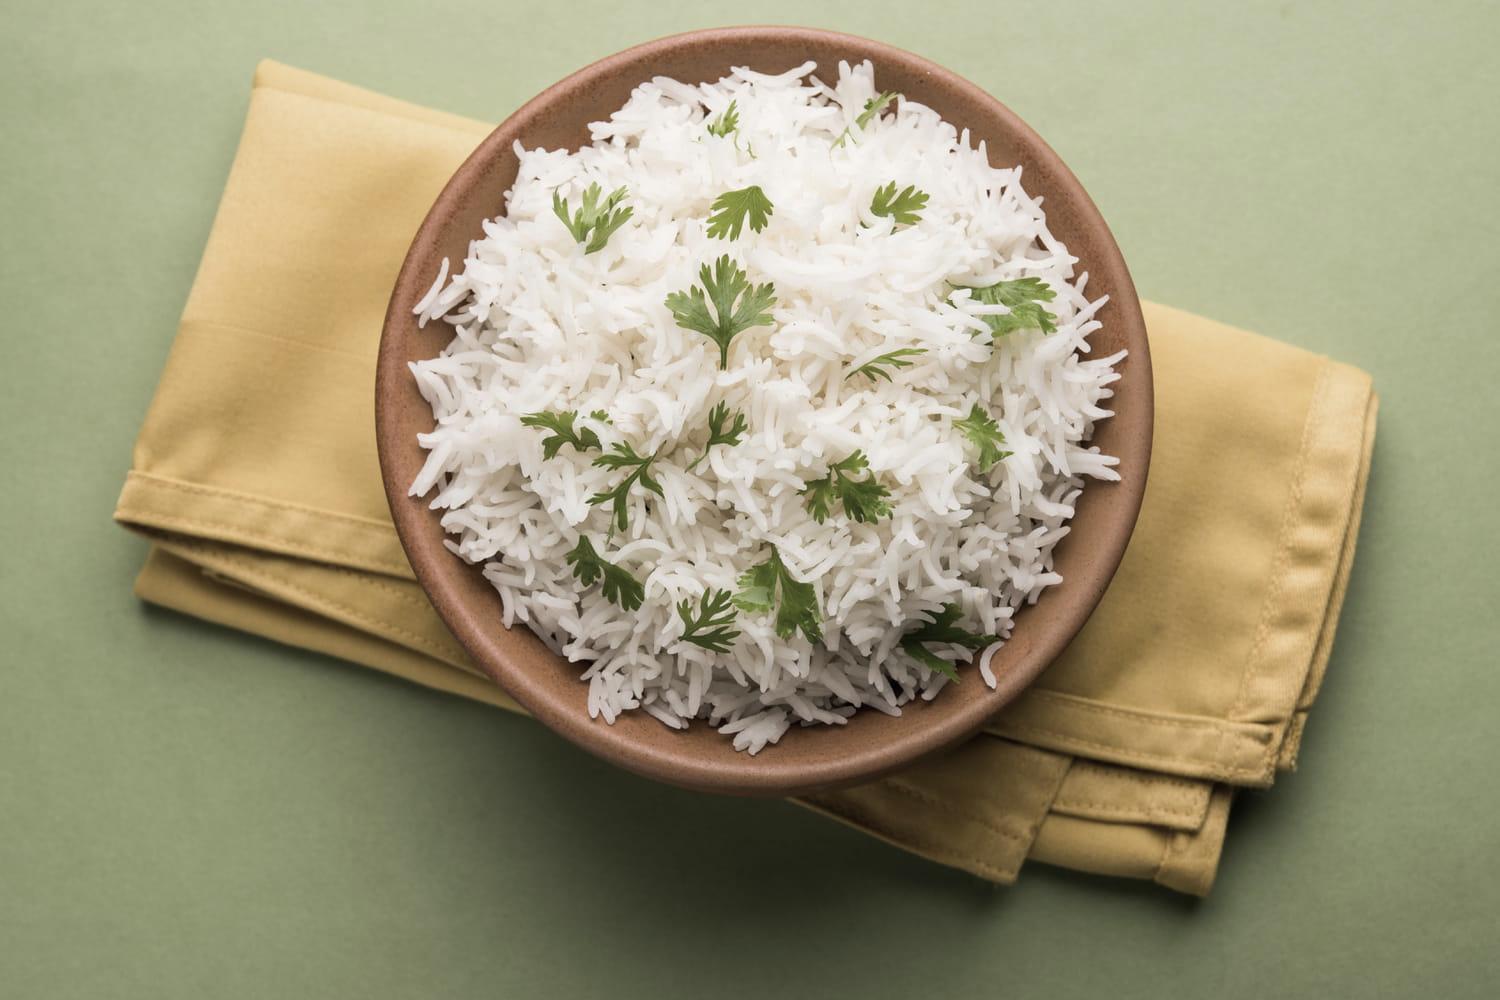 Astuces simples et rapides pour réchauffer du riz!